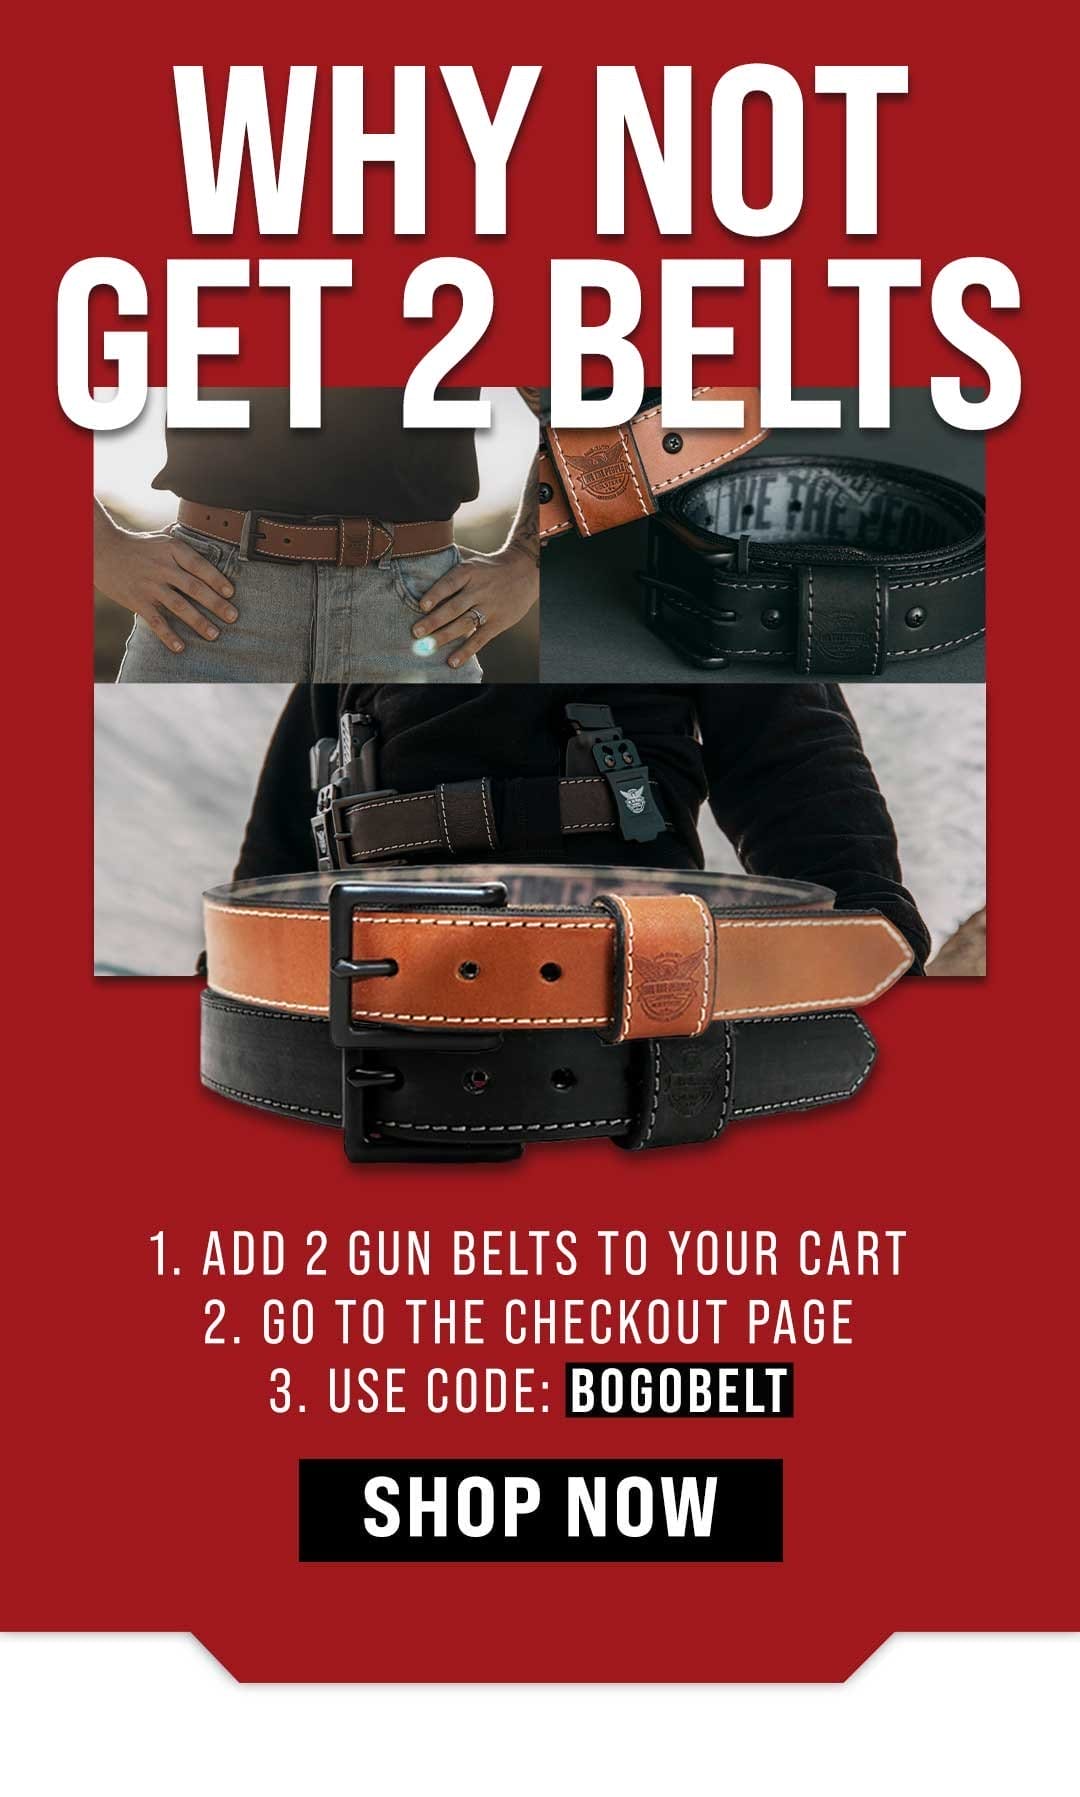 Why not 2 gun belts